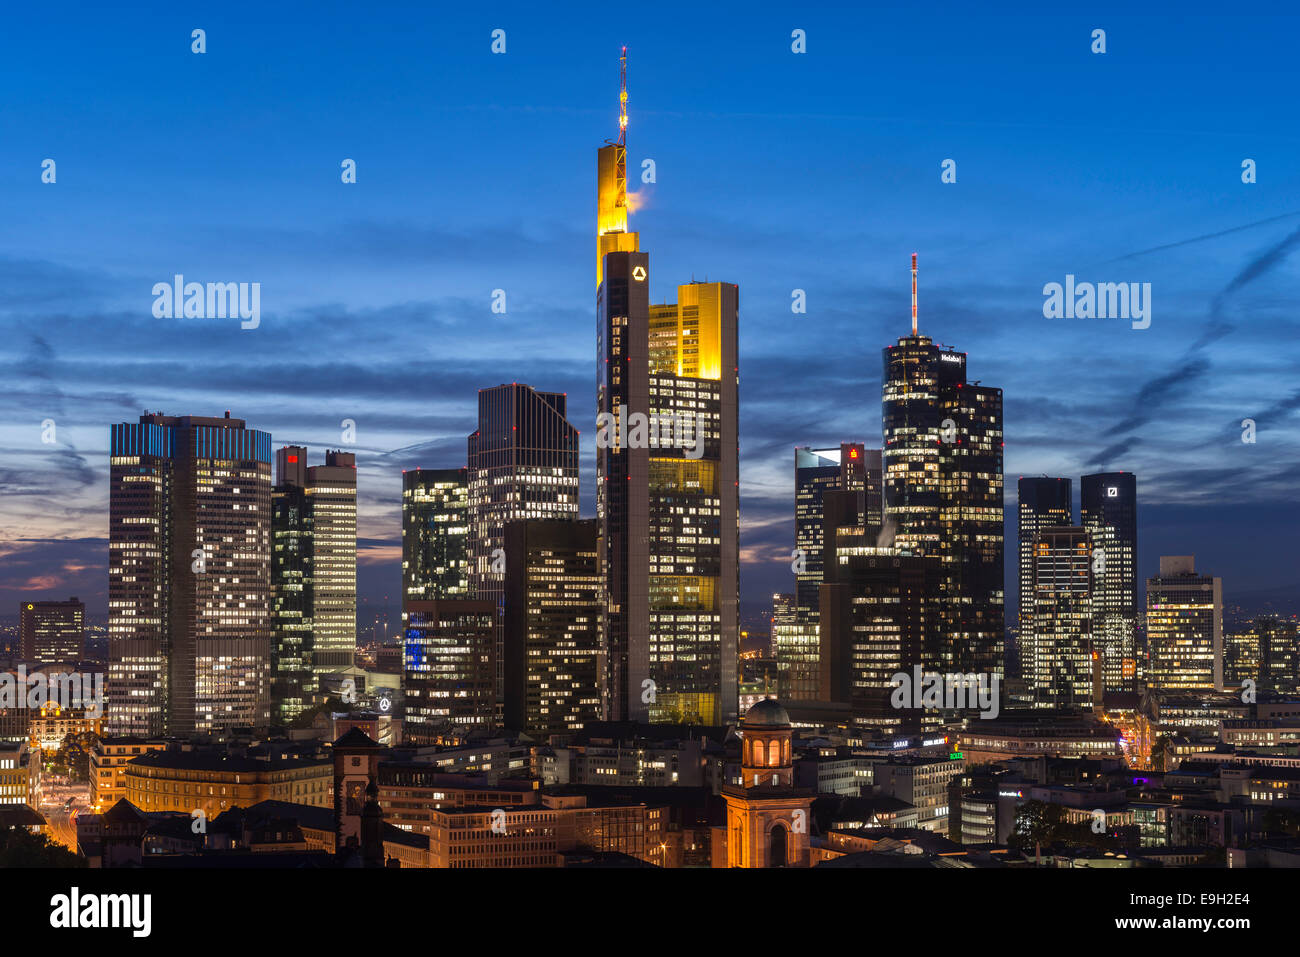 Vedute dello skyline della città al tramonto e grattacieli illuminati, centro città, Frankfurt am Main, Hesse, Germania Foto Stock